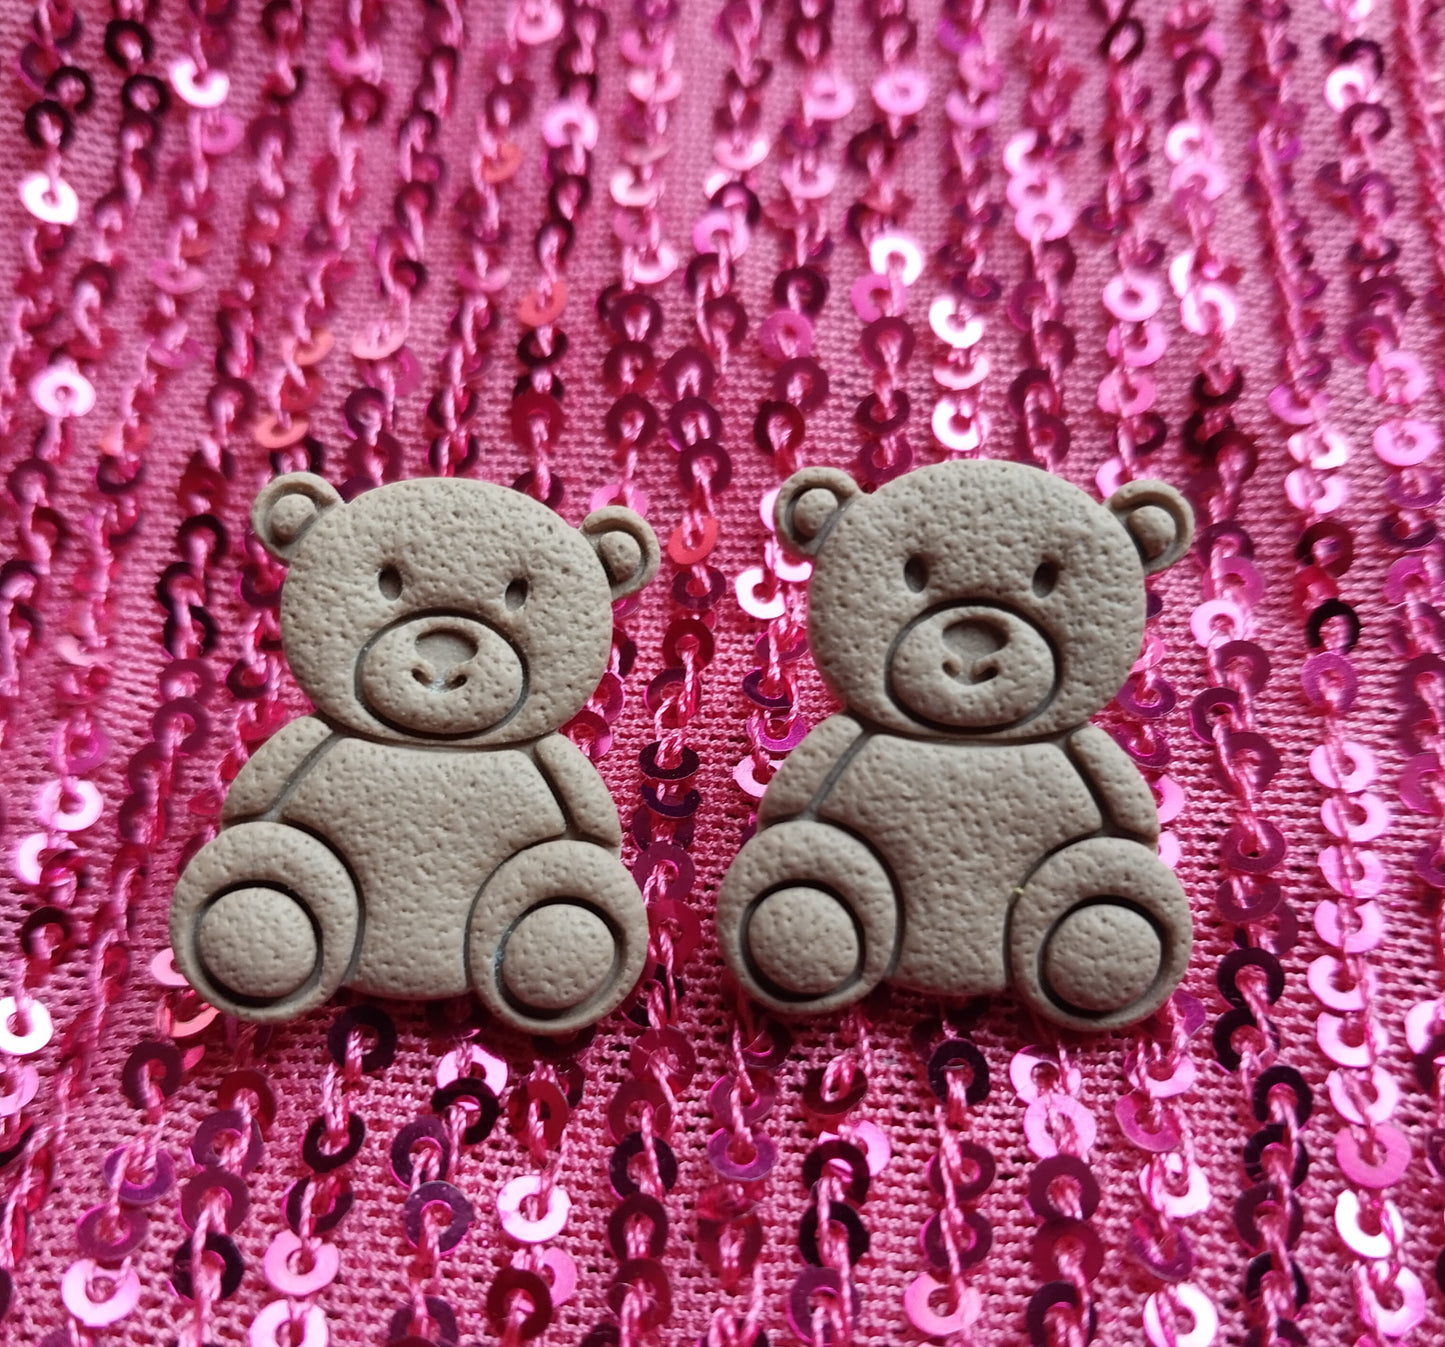 Mini Cozy Bear Stud Earrings